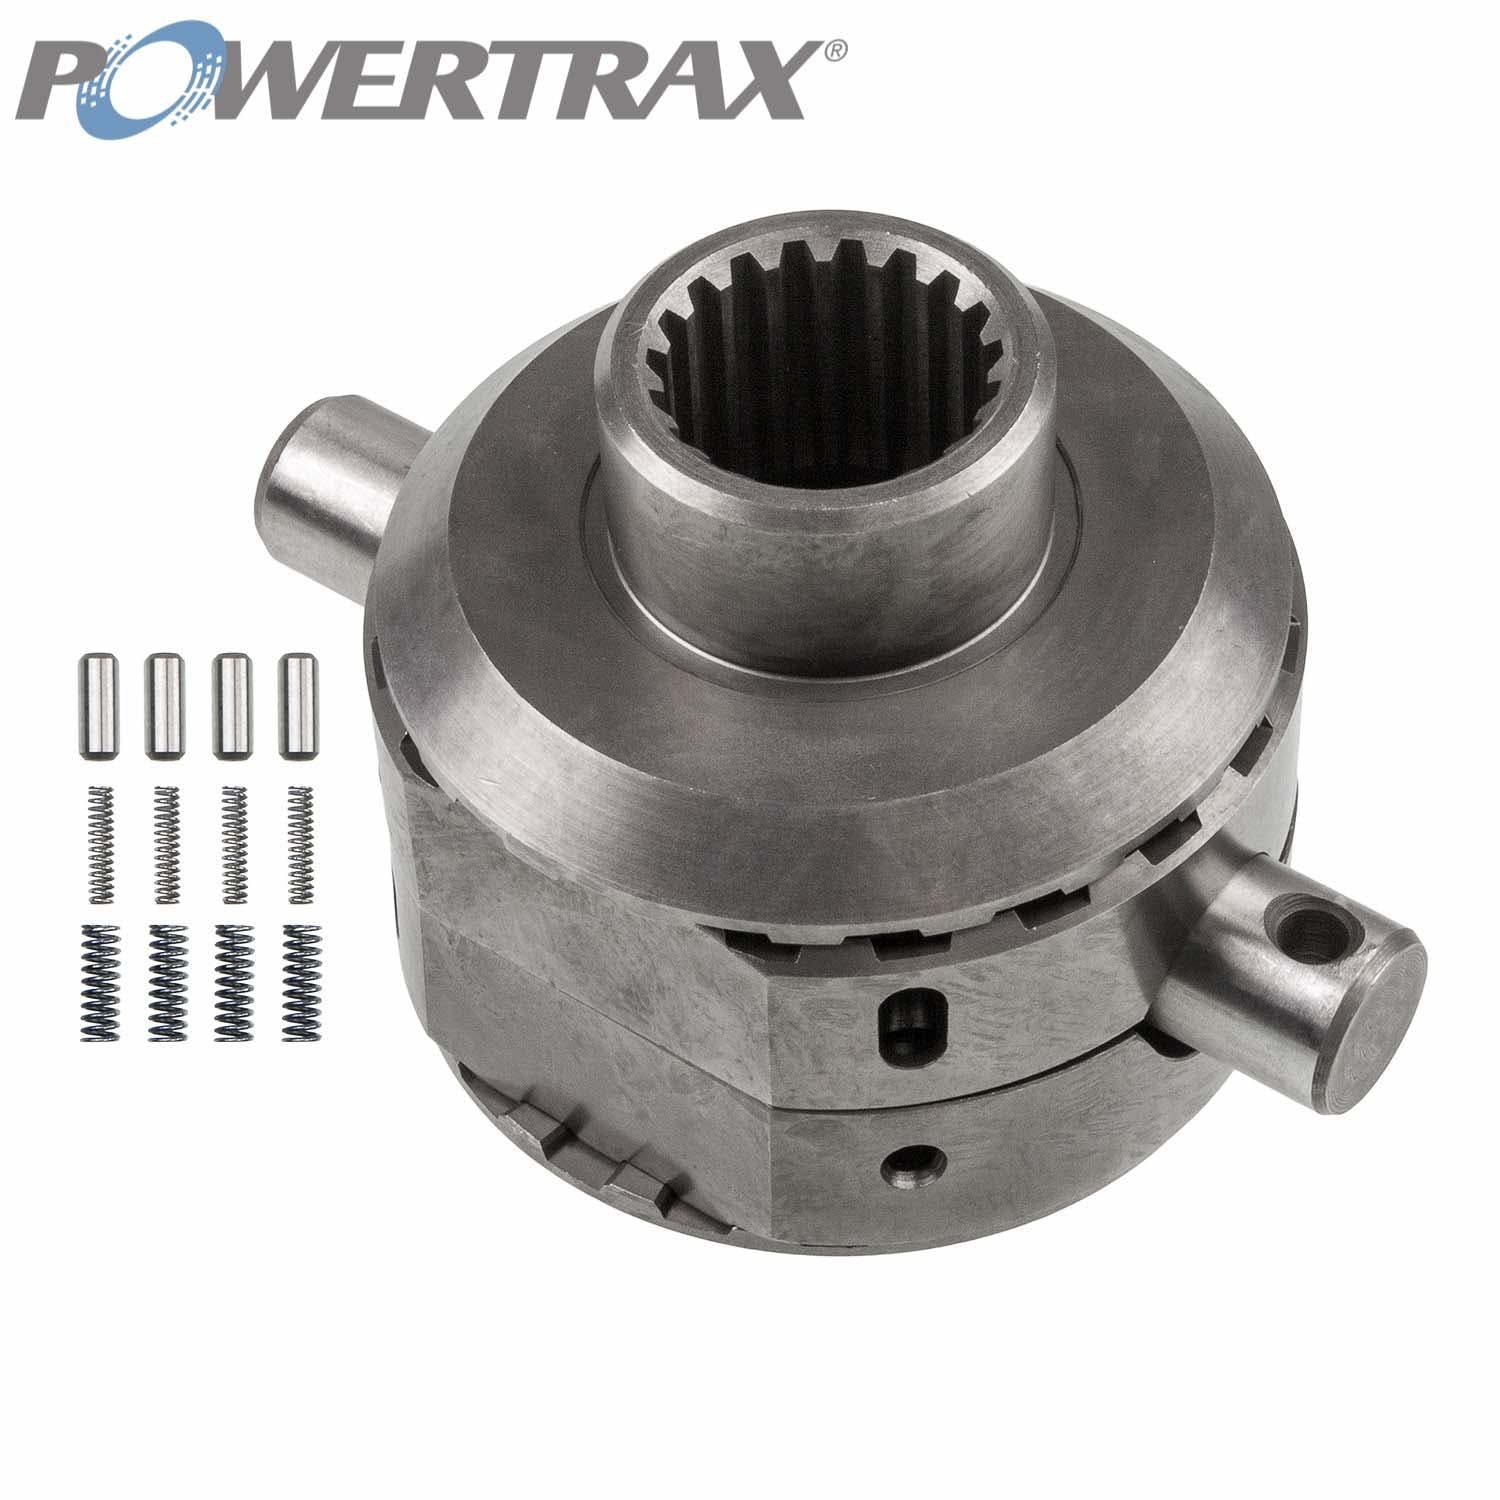 PowerTrax 2413-LR Lock Right Locker